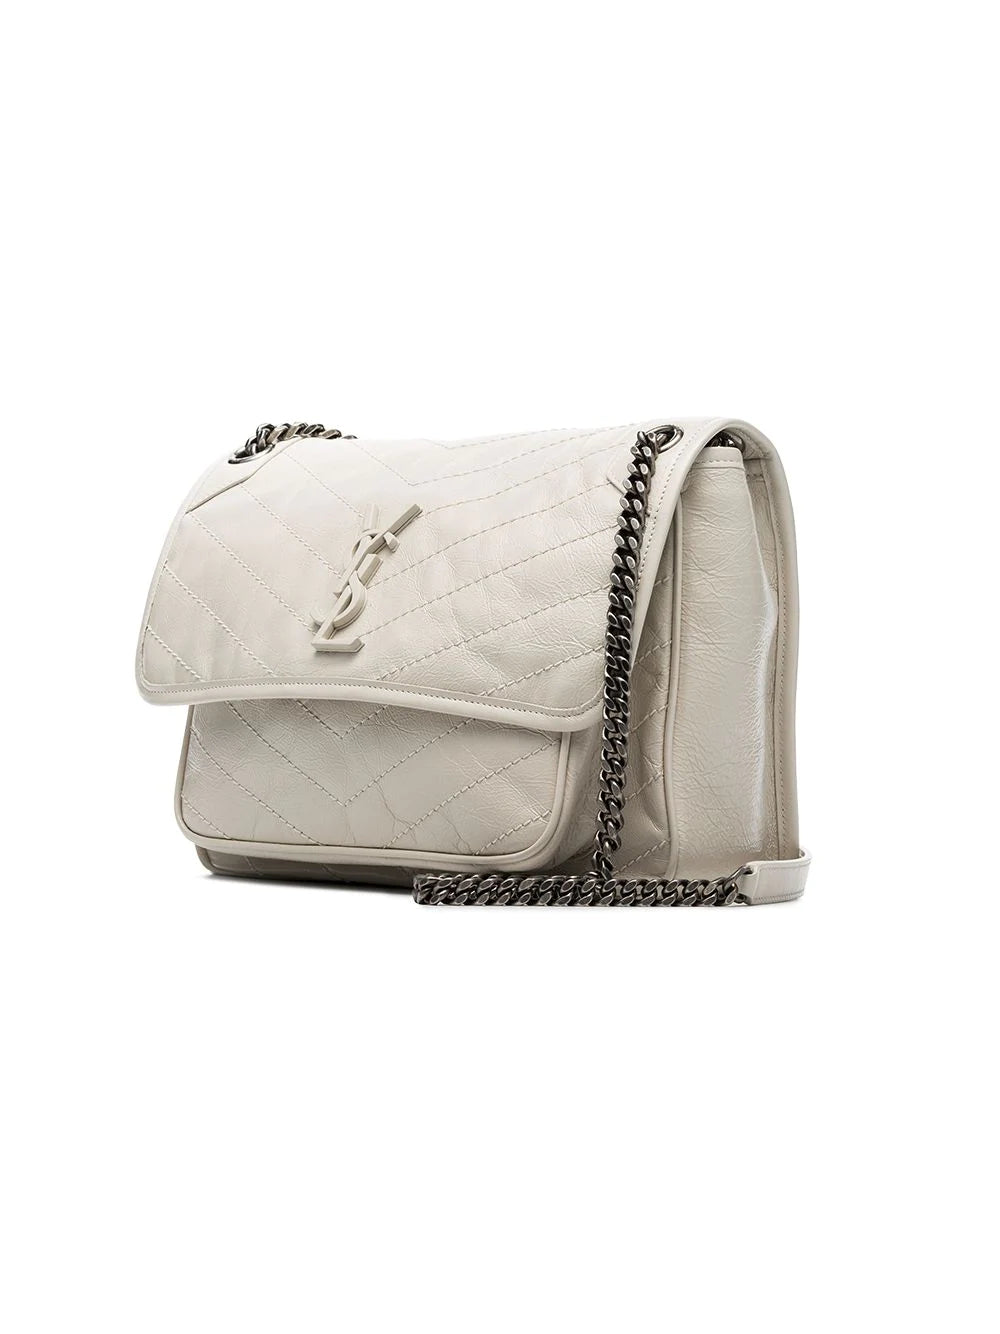 Saint Laurent Niki Leather Shoulder Bag Nero